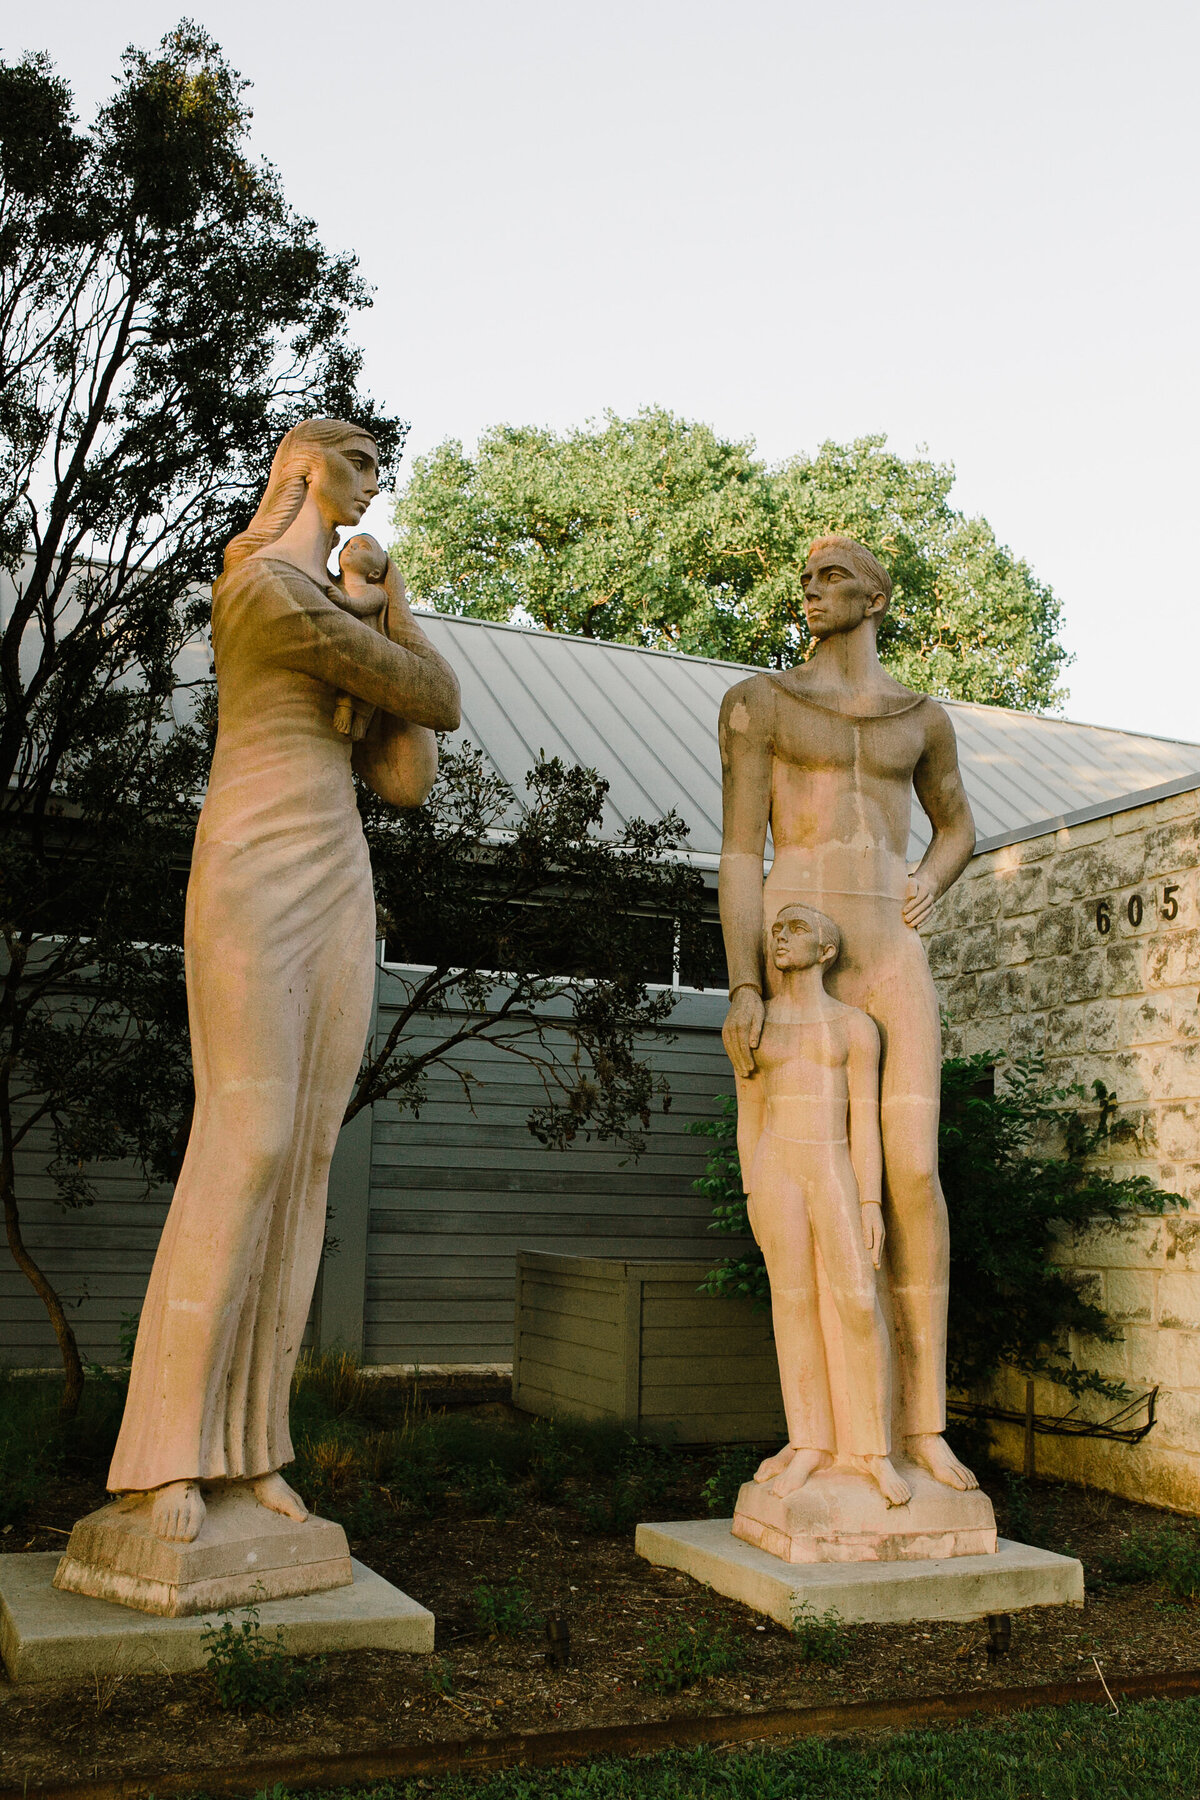 Statues in the Umlauf Sculpture Garden, Austin